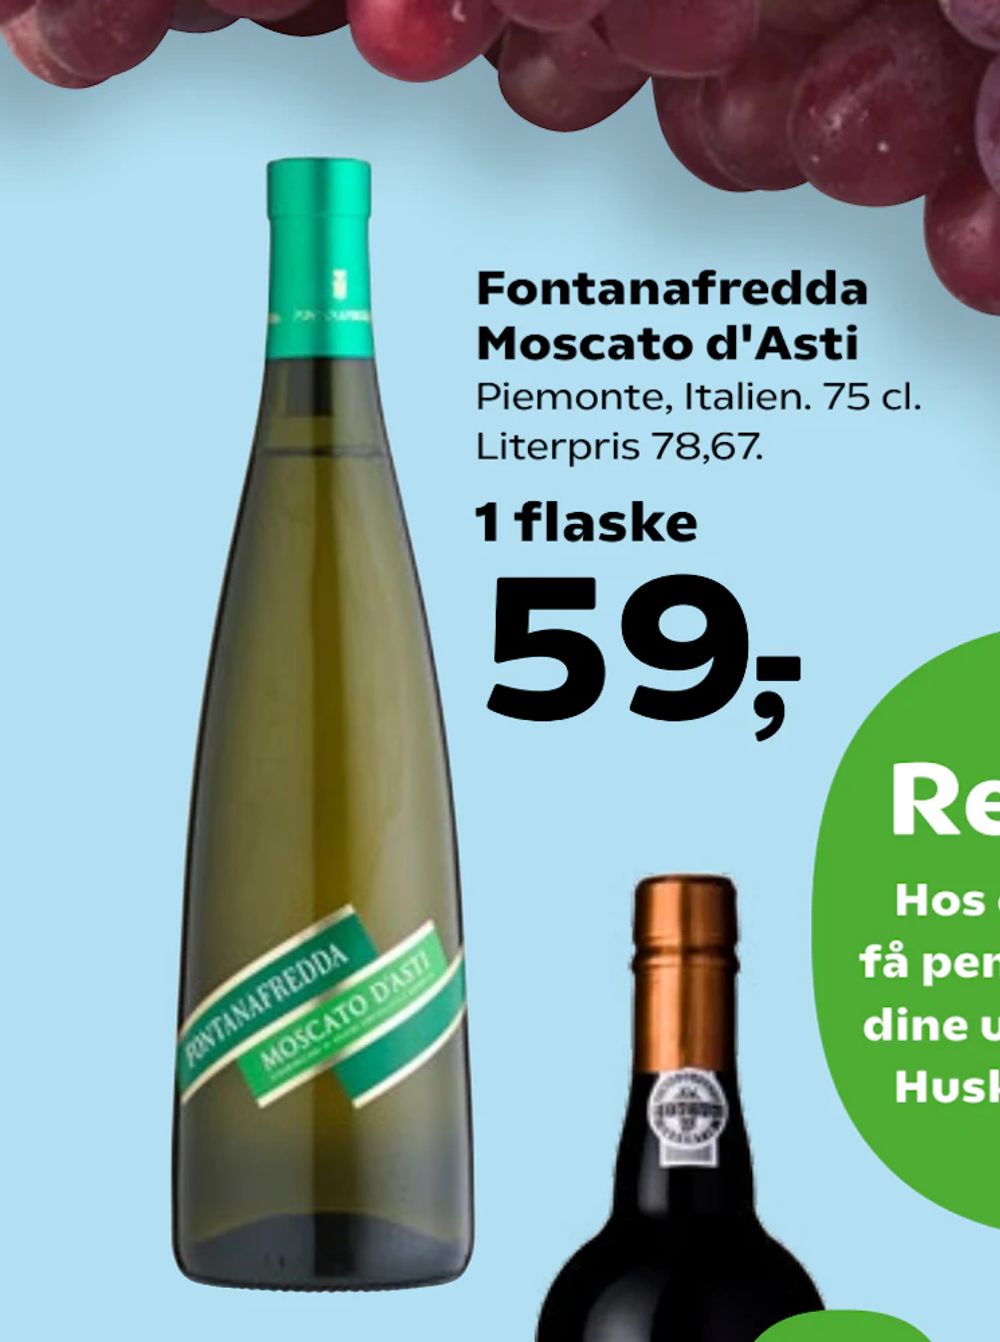 Tilbud på Fontanafredda Moscato d'Asti fra SuperBrugsen til 59 kr.